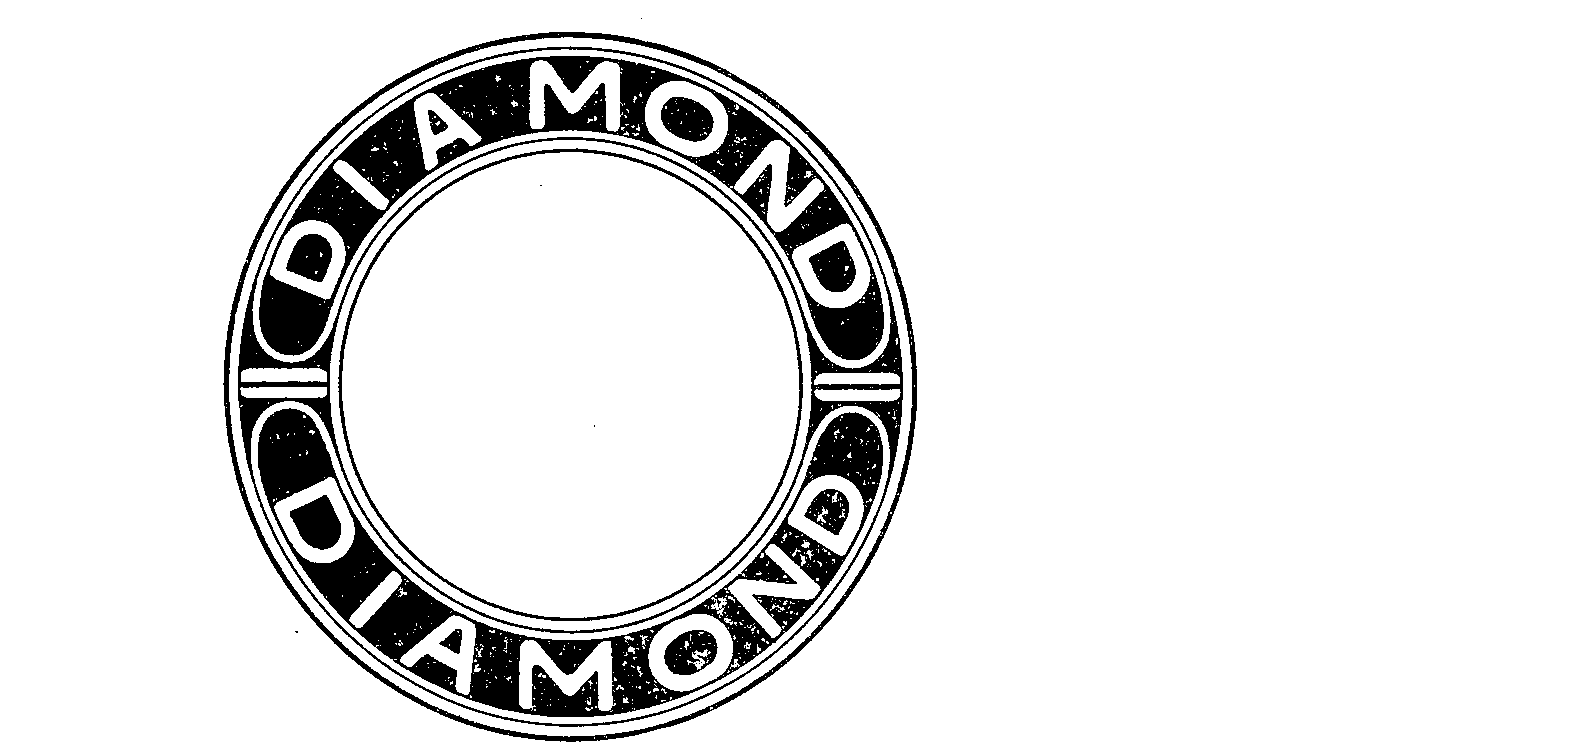 DIAMOND DIAMOND